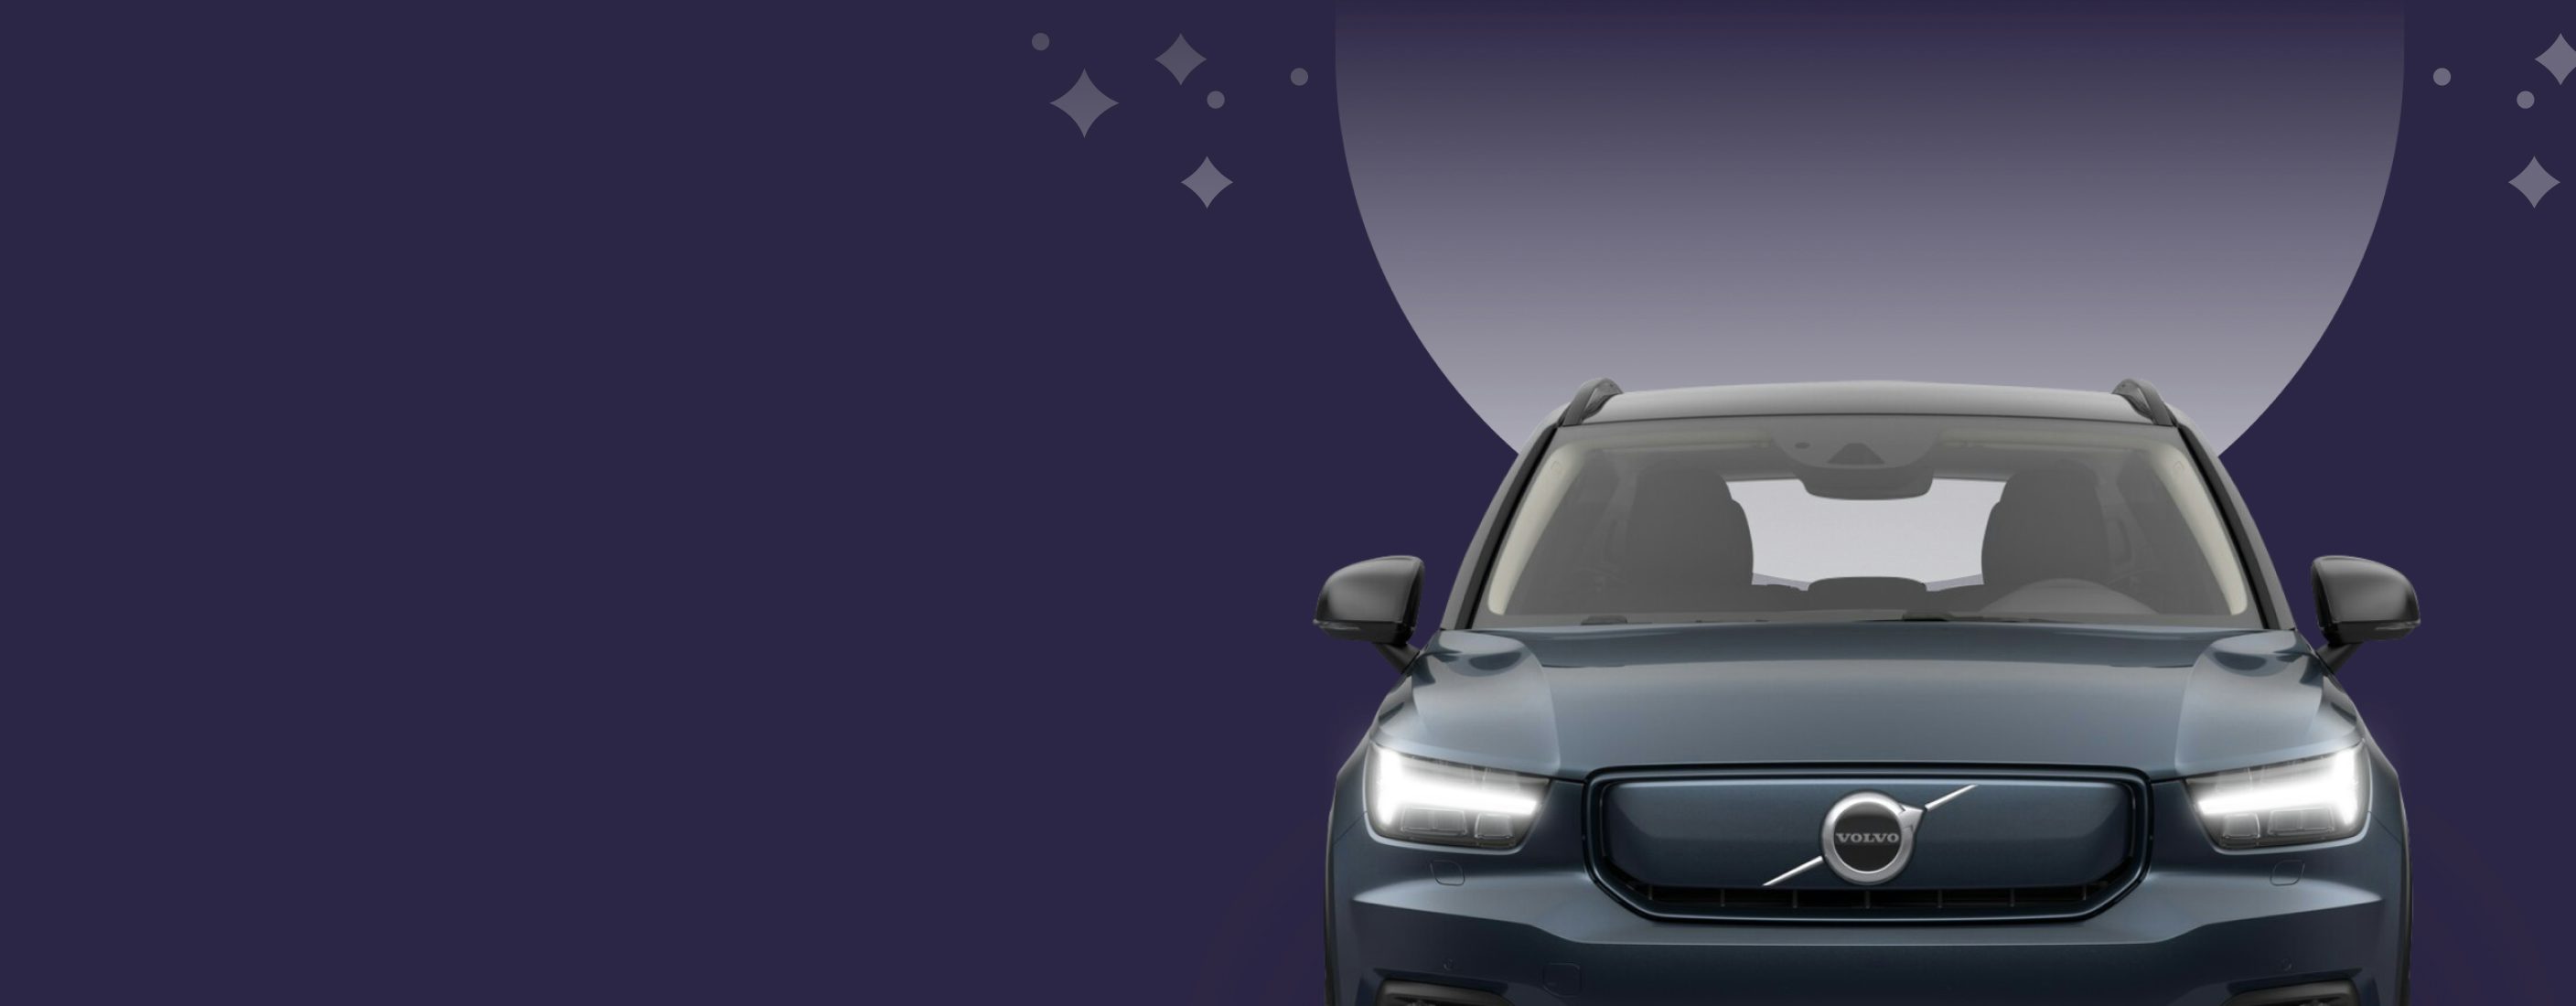 Mörkblå Volvo bil framför en abstrakt lila bakgrund med stjärnmönster